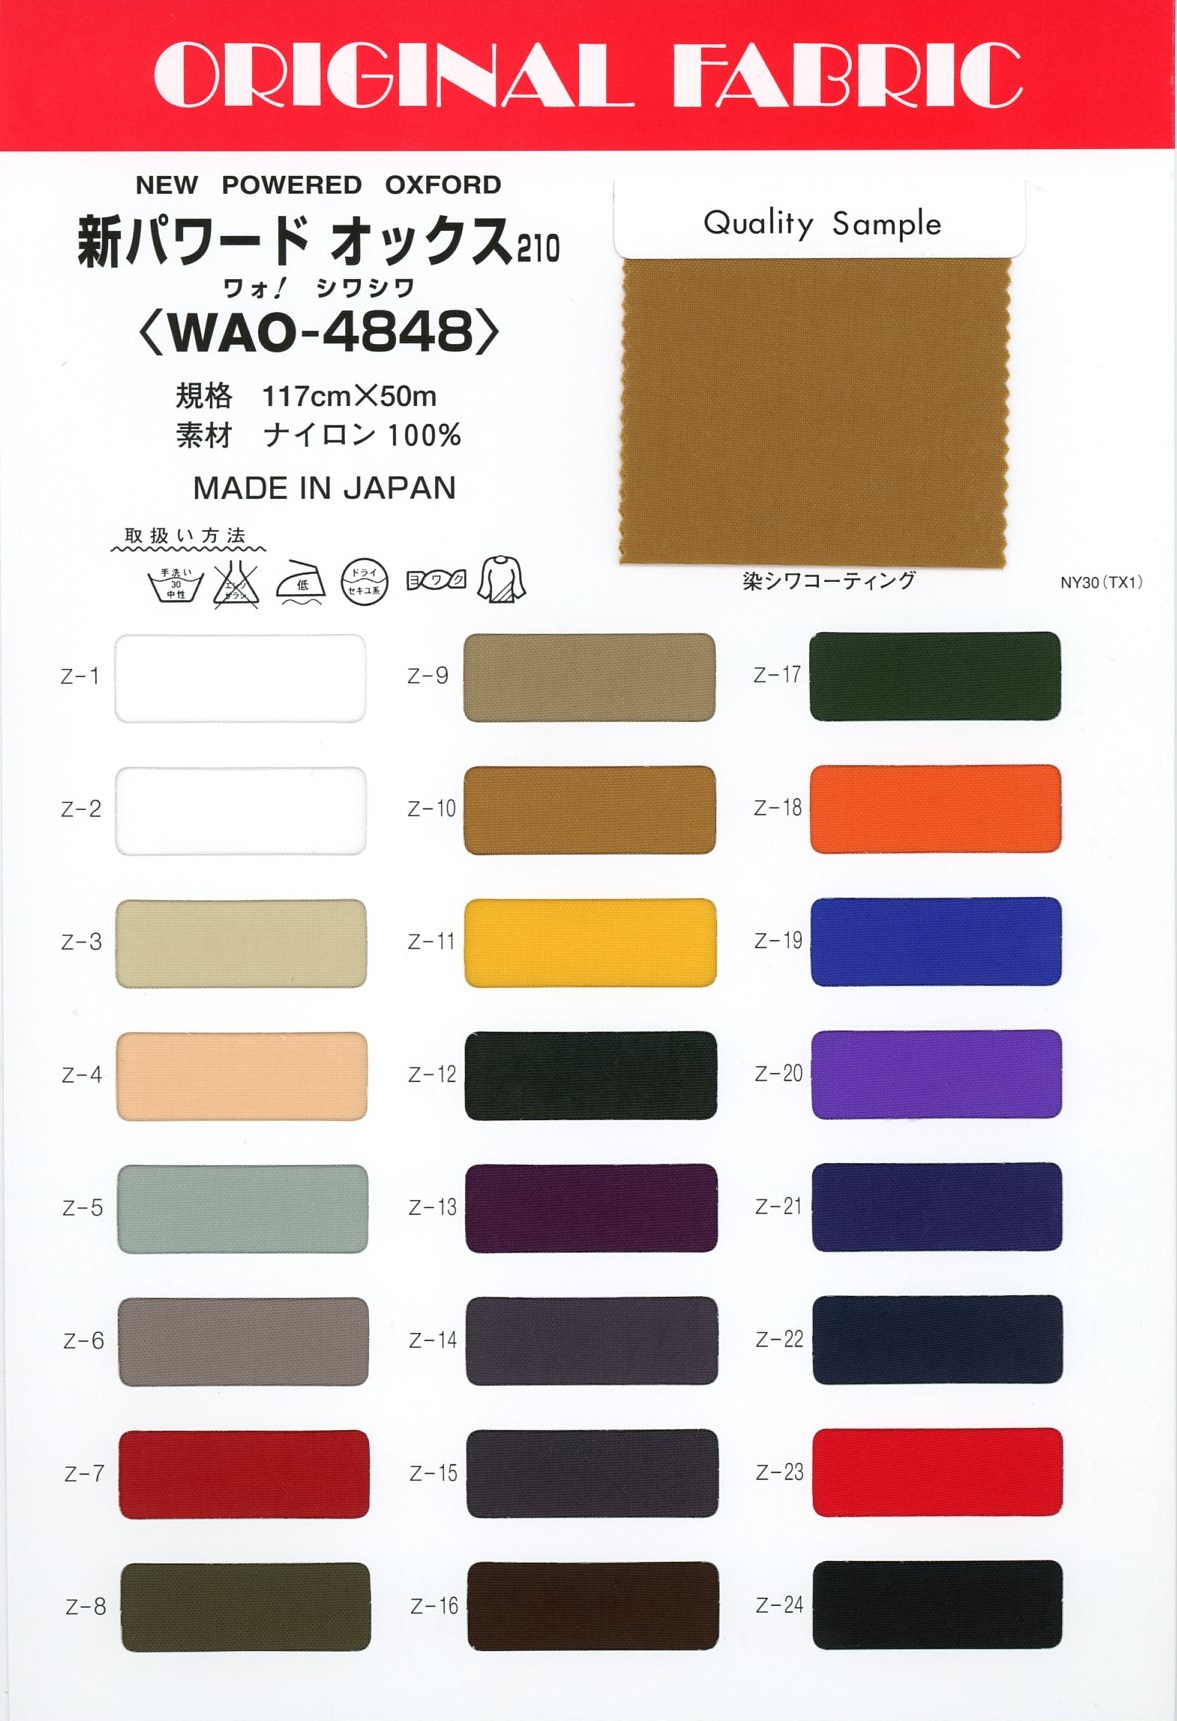 WAO-4848 Vải Oxford Cung Cấp Năng Lượng Mới 210 Masuda (Masuda)